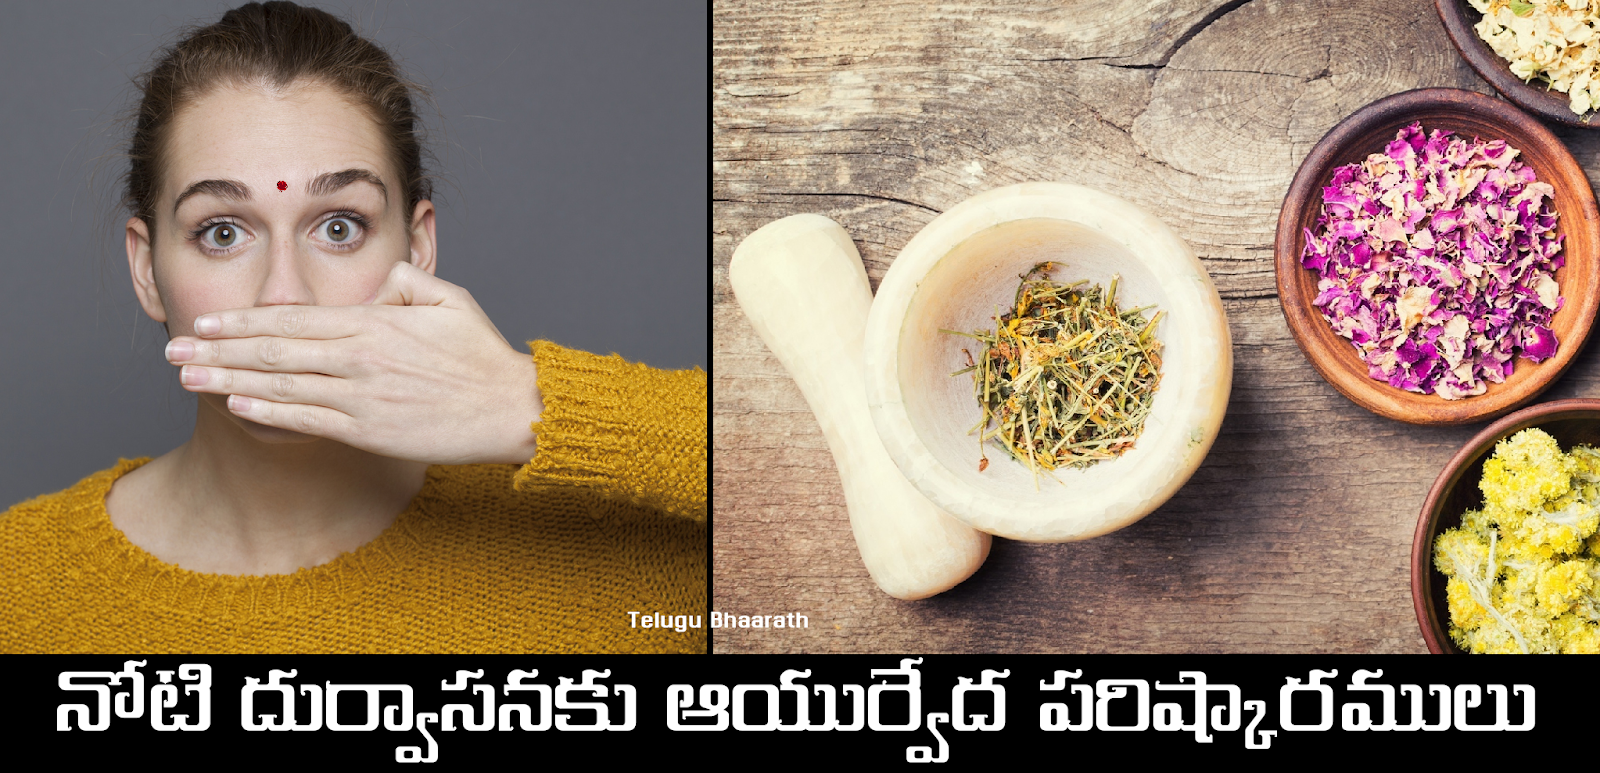 నోటి దుర్వాసనకు ఆయుర్వేద పరిష్కారములు - Noti Durvasana, Bad Oral Smell